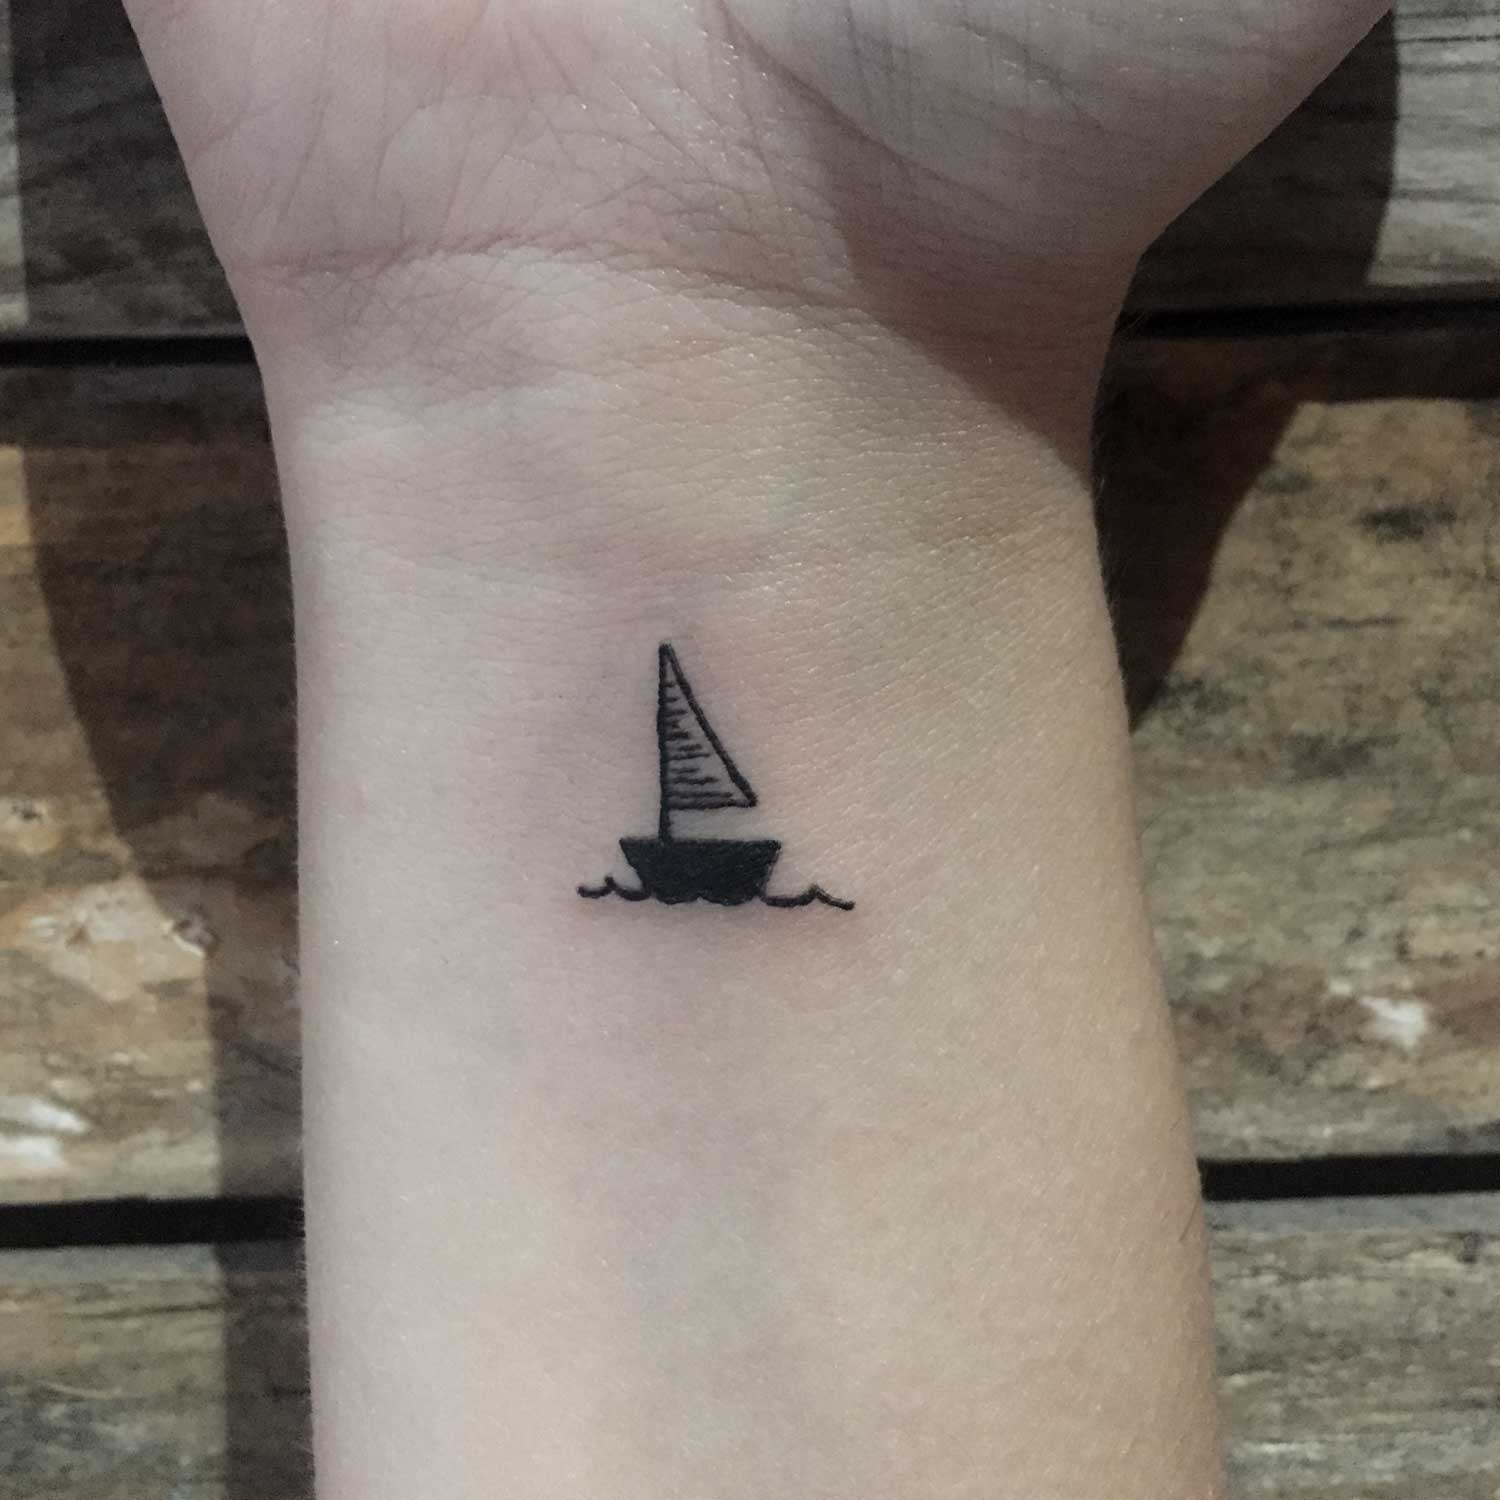 Tatuaje black work de un barco